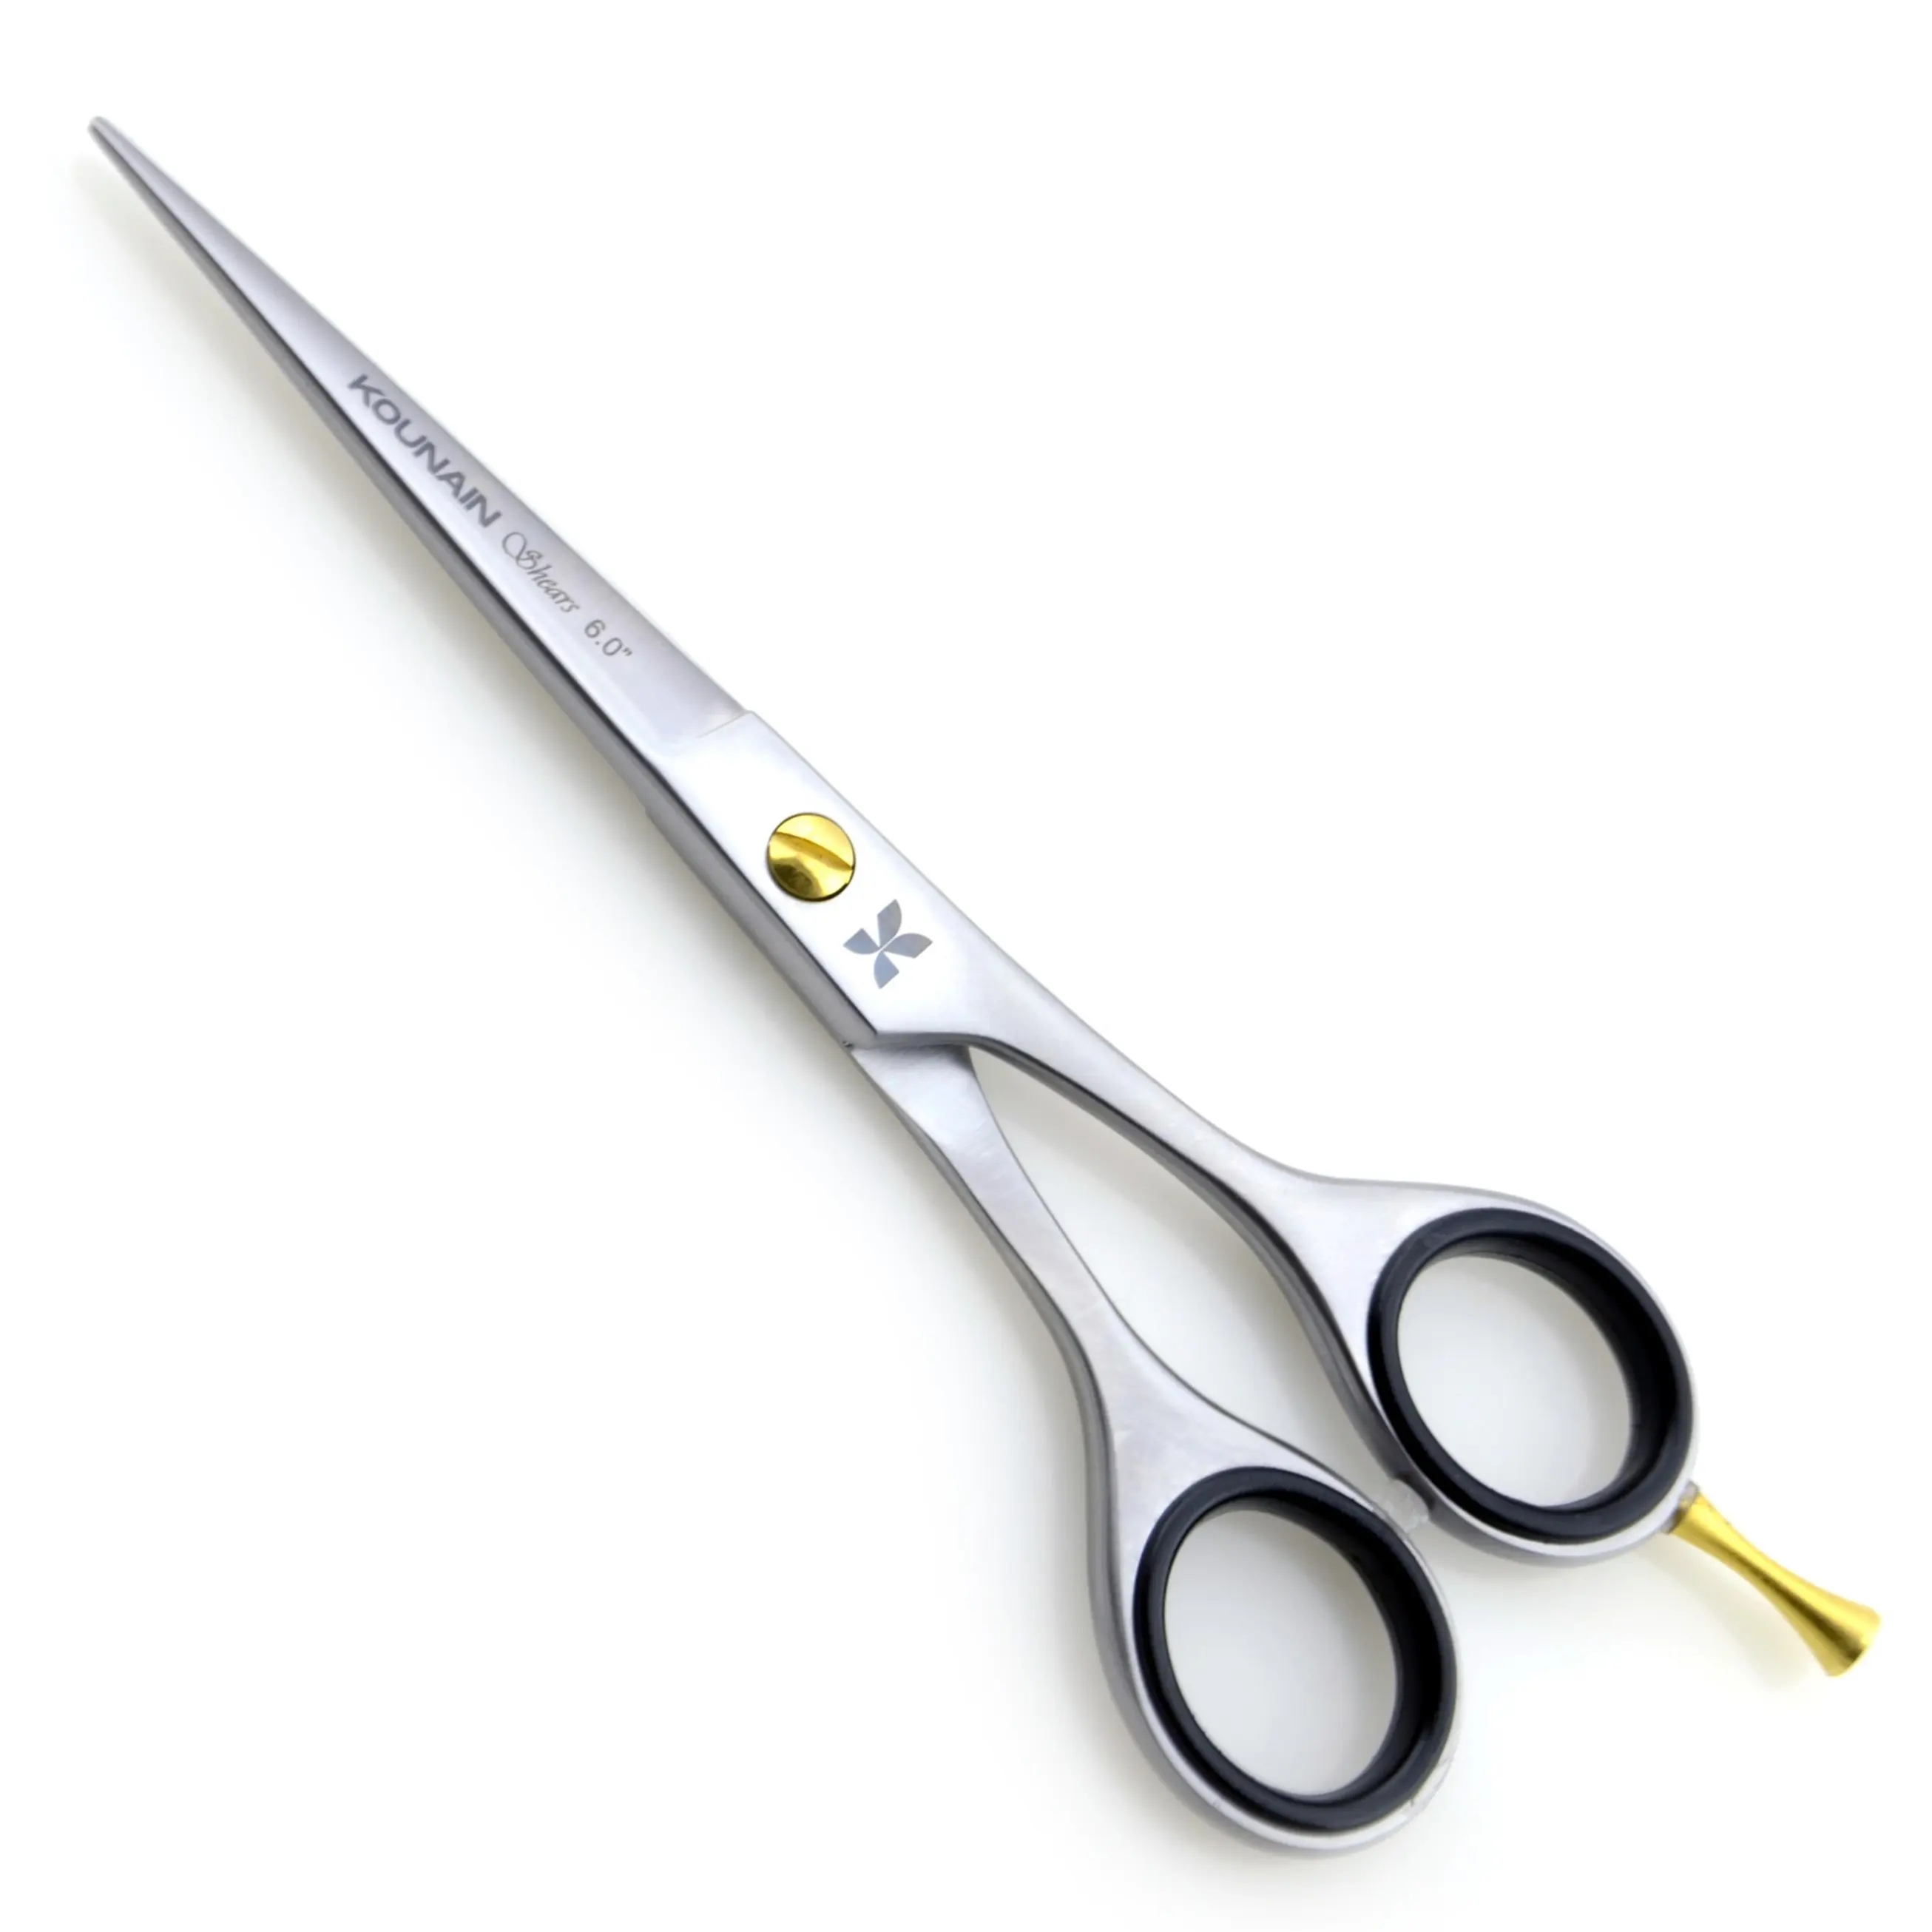 KOUNAIN profesyonel berber saç makas paslanmaz çelik kuaför makas ile 420 mikro testere dişli bıçak